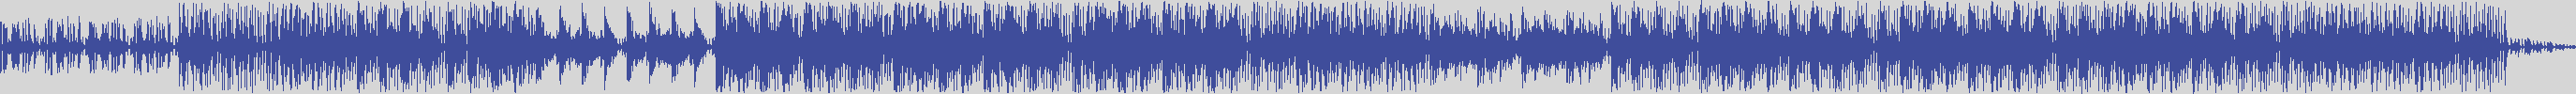 noclouds_chillout [NOC119] Ruggero Dj - Pacha [Original Mix] audio wave form